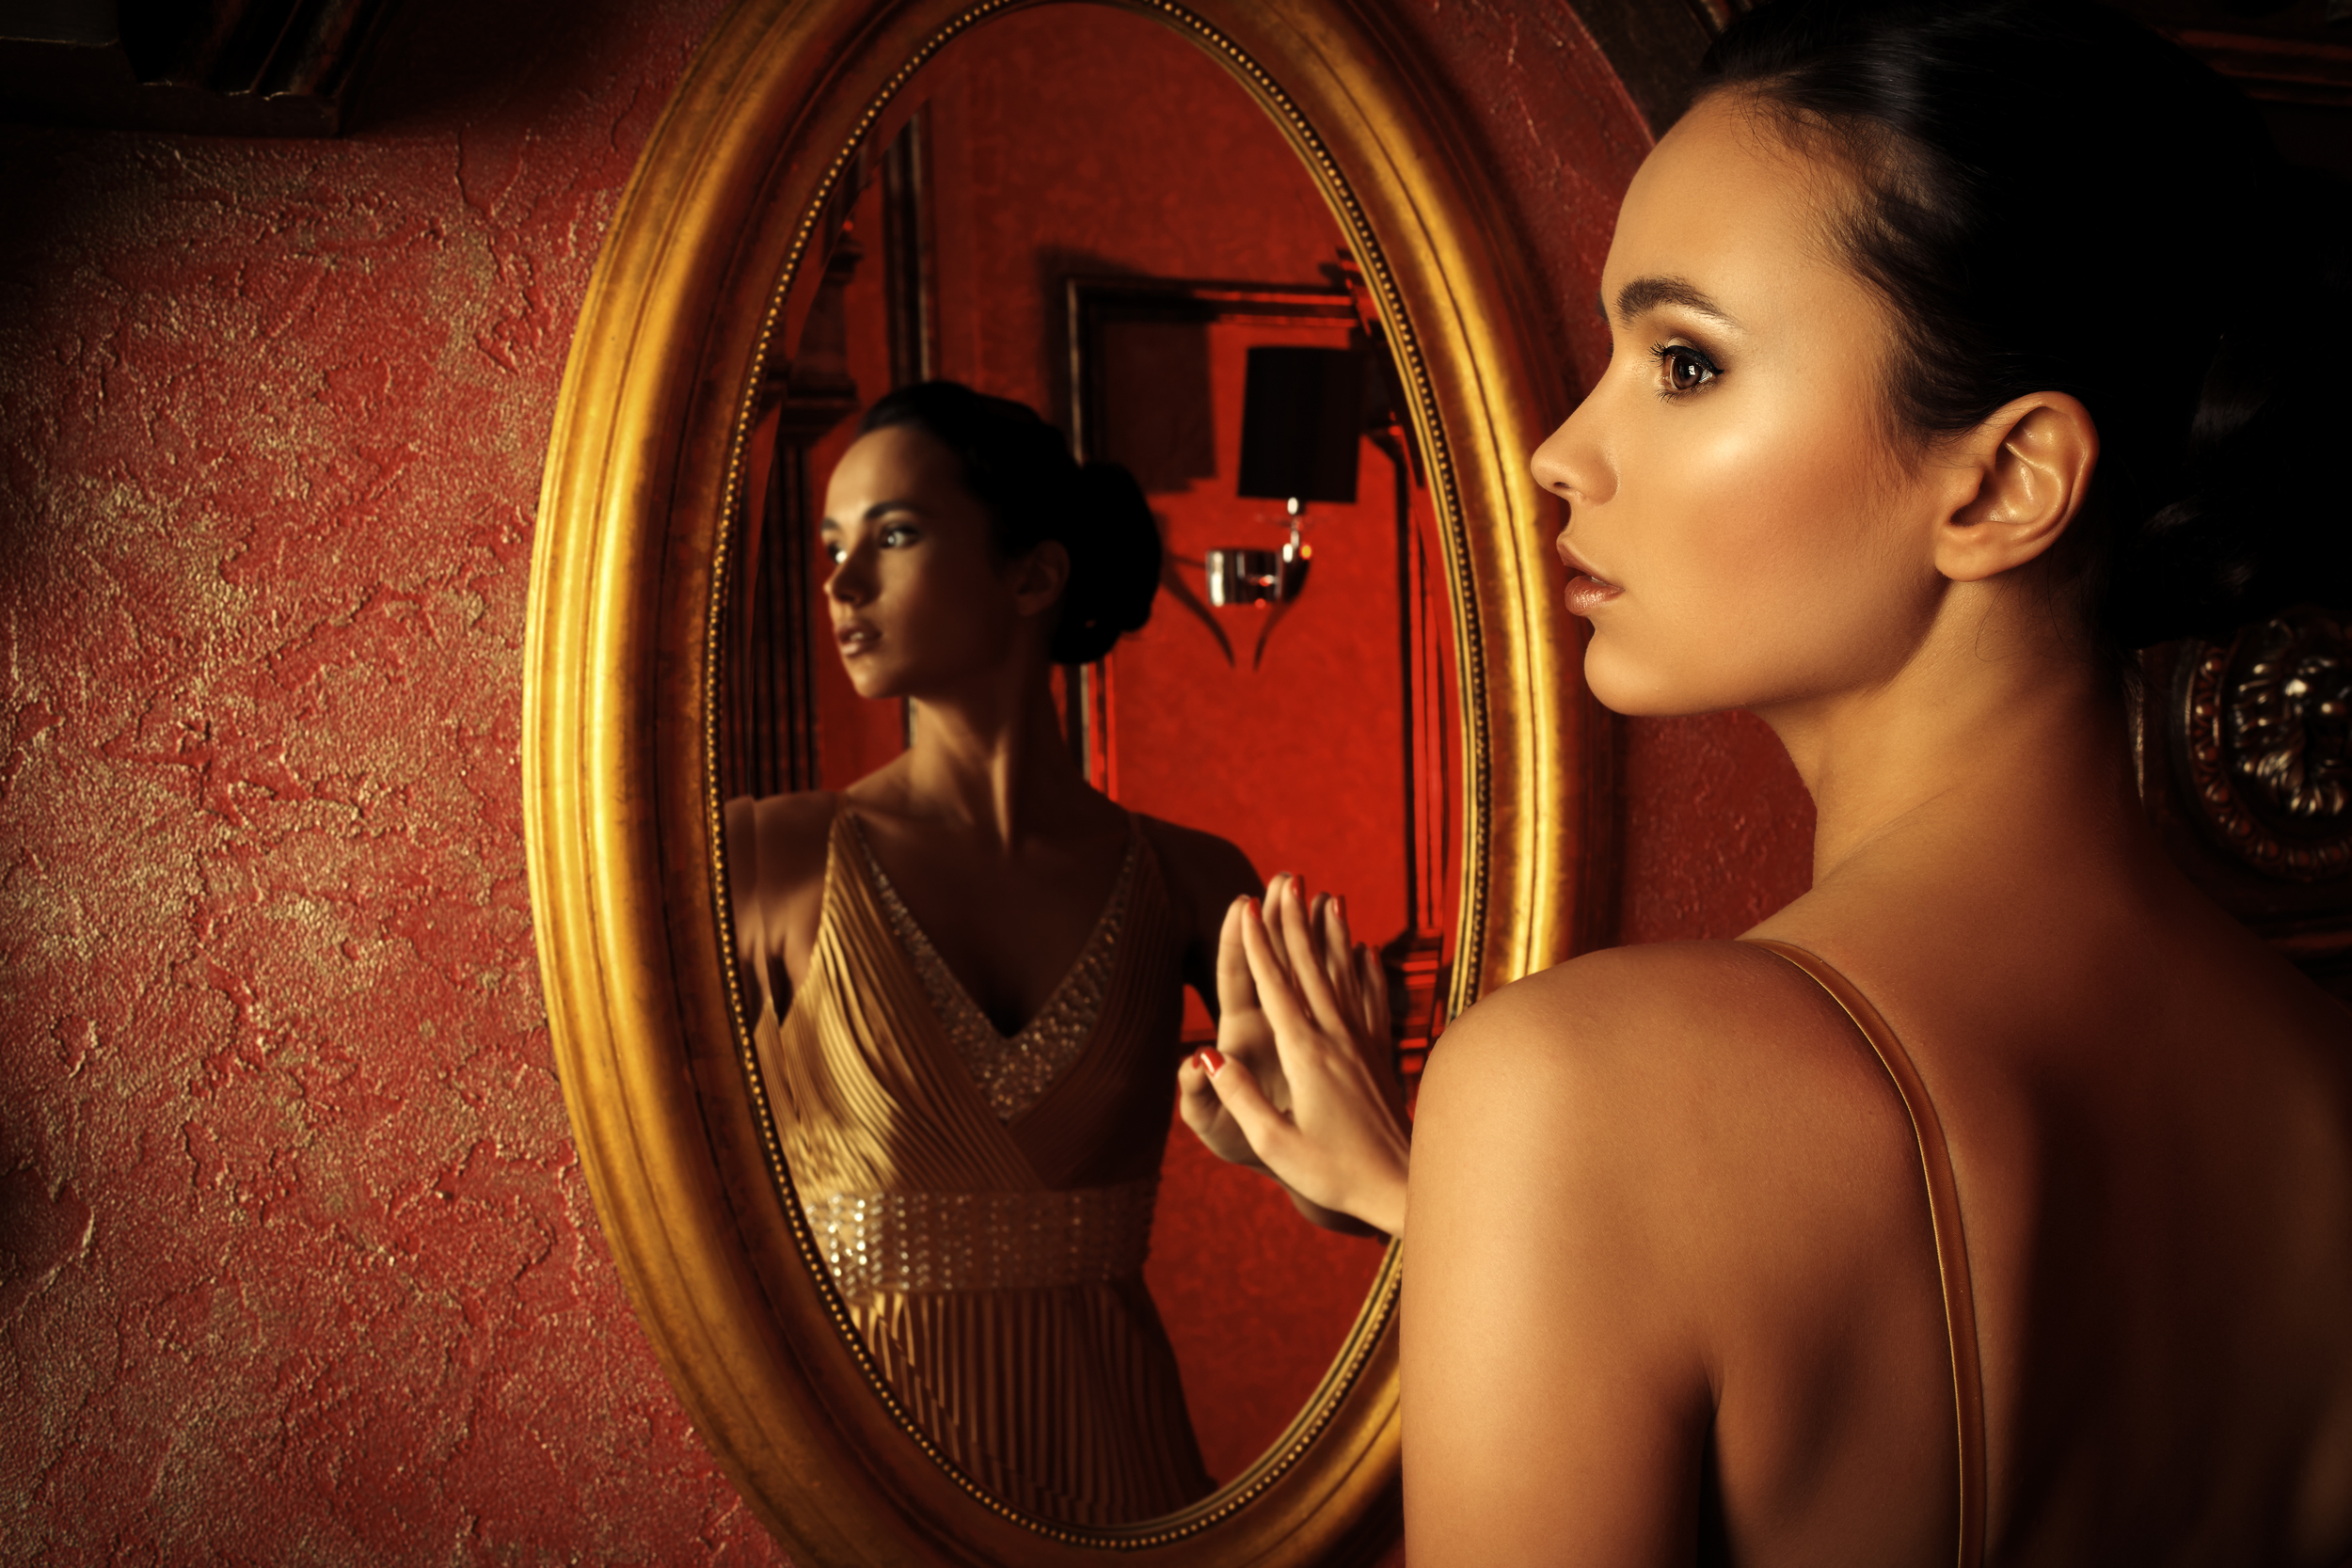 В зеркале вижу себя другой. Девушка в зеркале. Перед зеркалом. Отражение женщины в зеркале. Красивое отражение в зеркале.